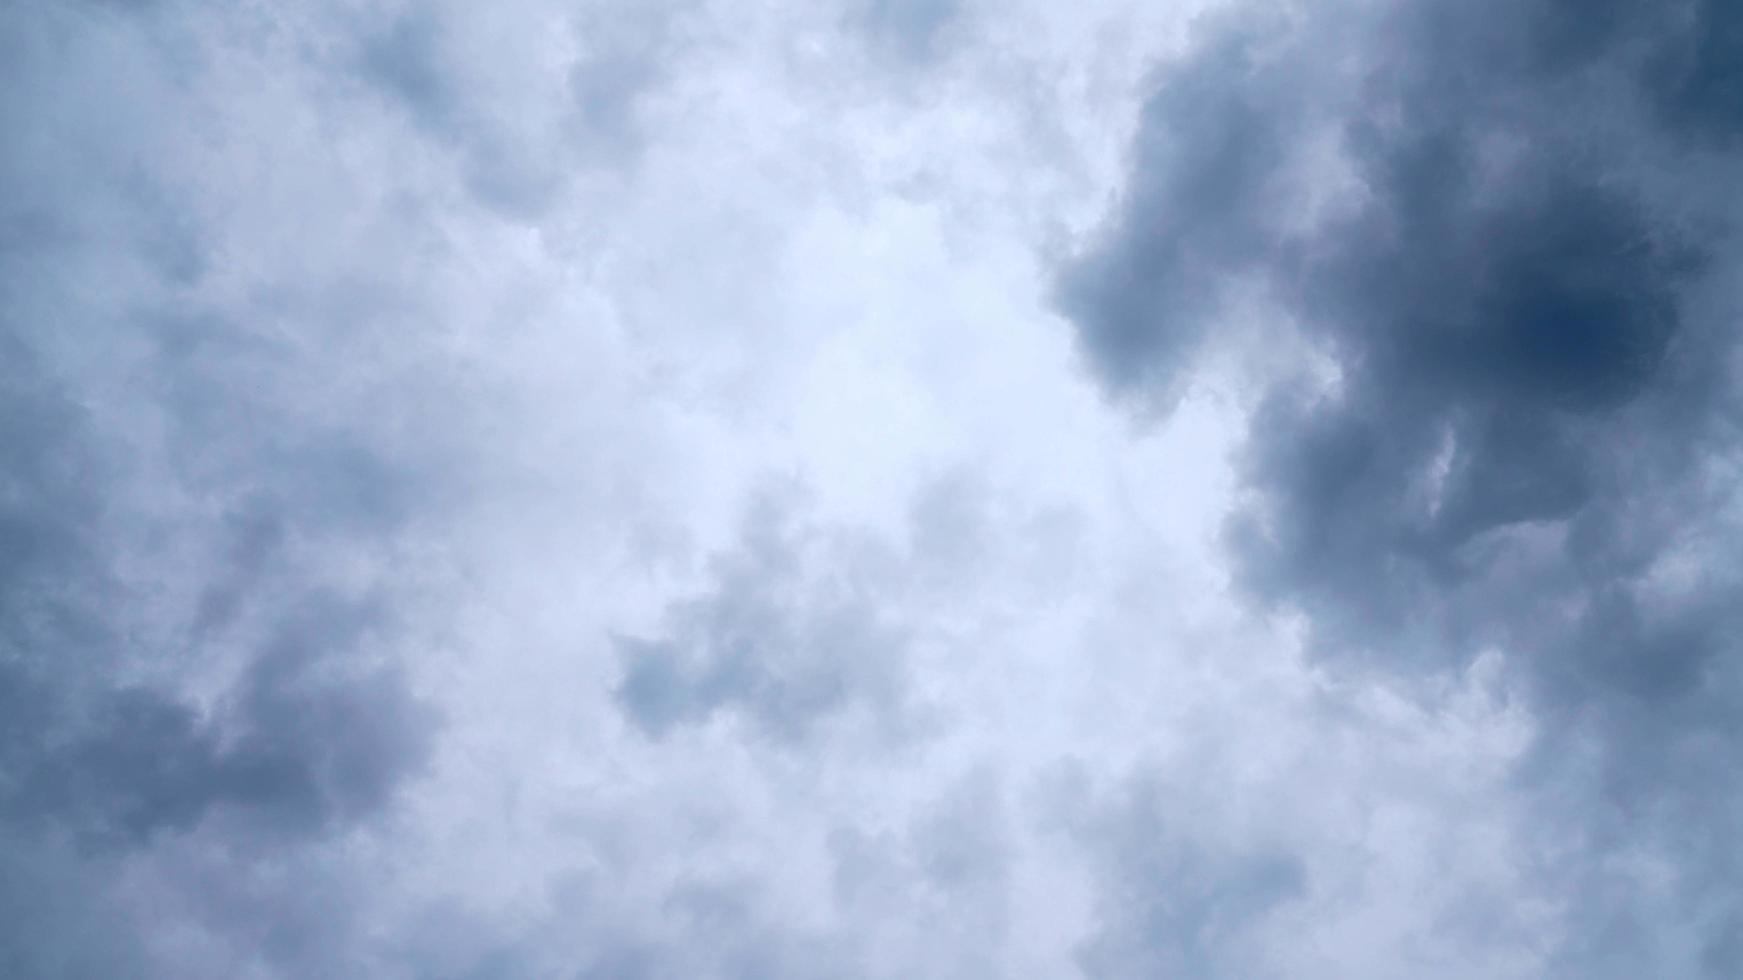 strukturierte Wolke, abstrakt weiß, isoliert auf schwarzem Hintergrund foto